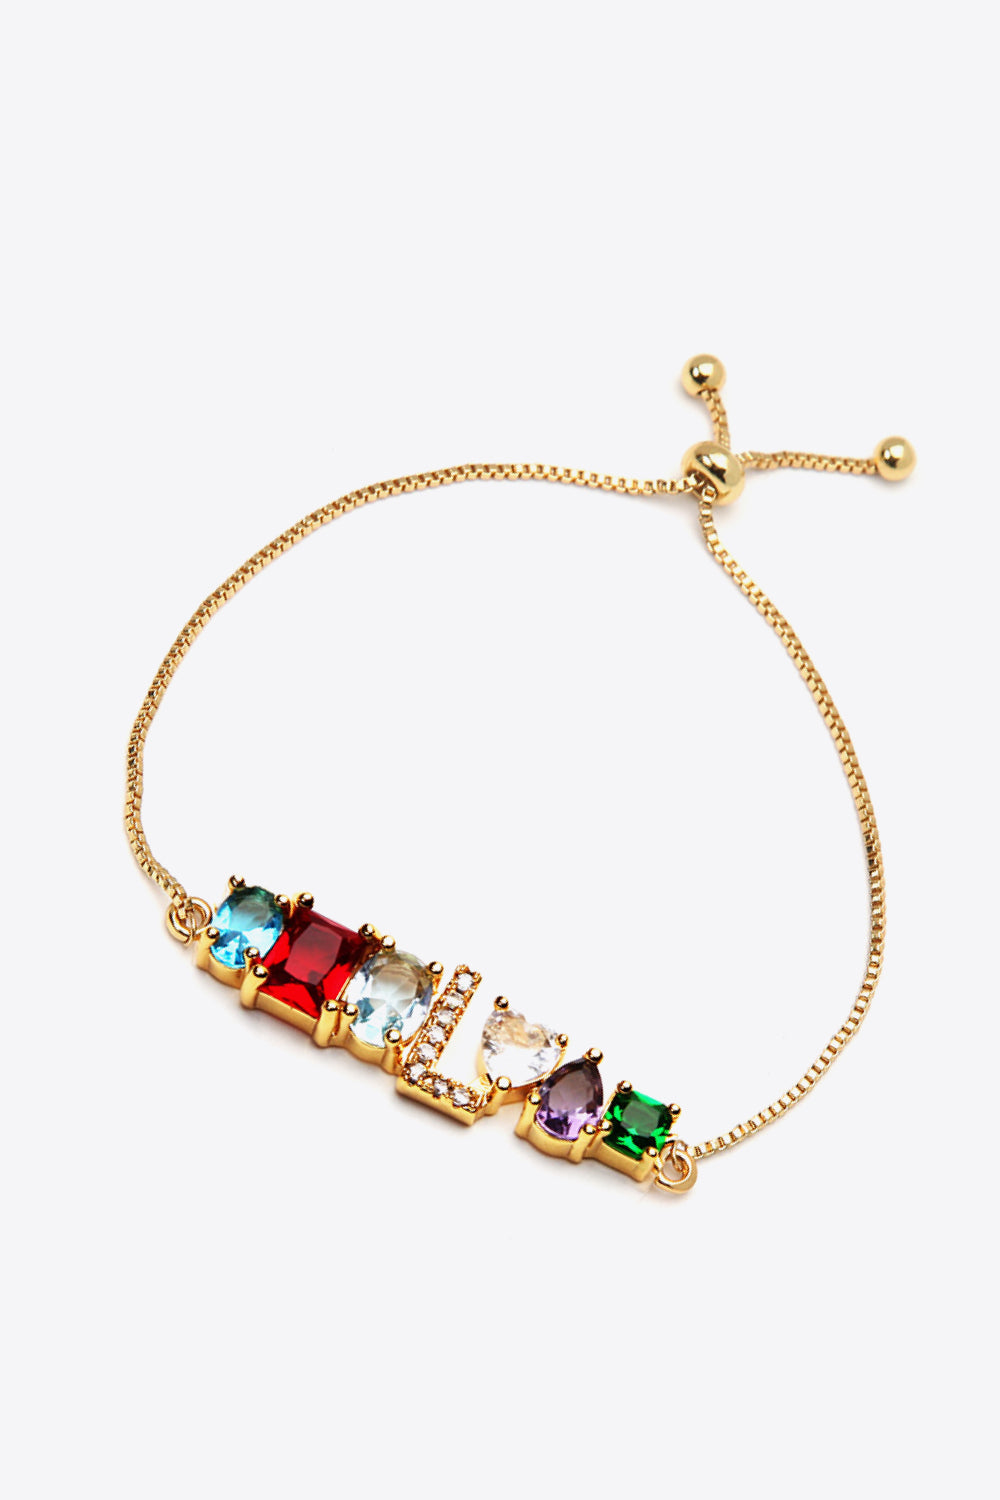 K to T Zircon Bracelet - Women’s Jewelry - Bracelets - 5 - 2024